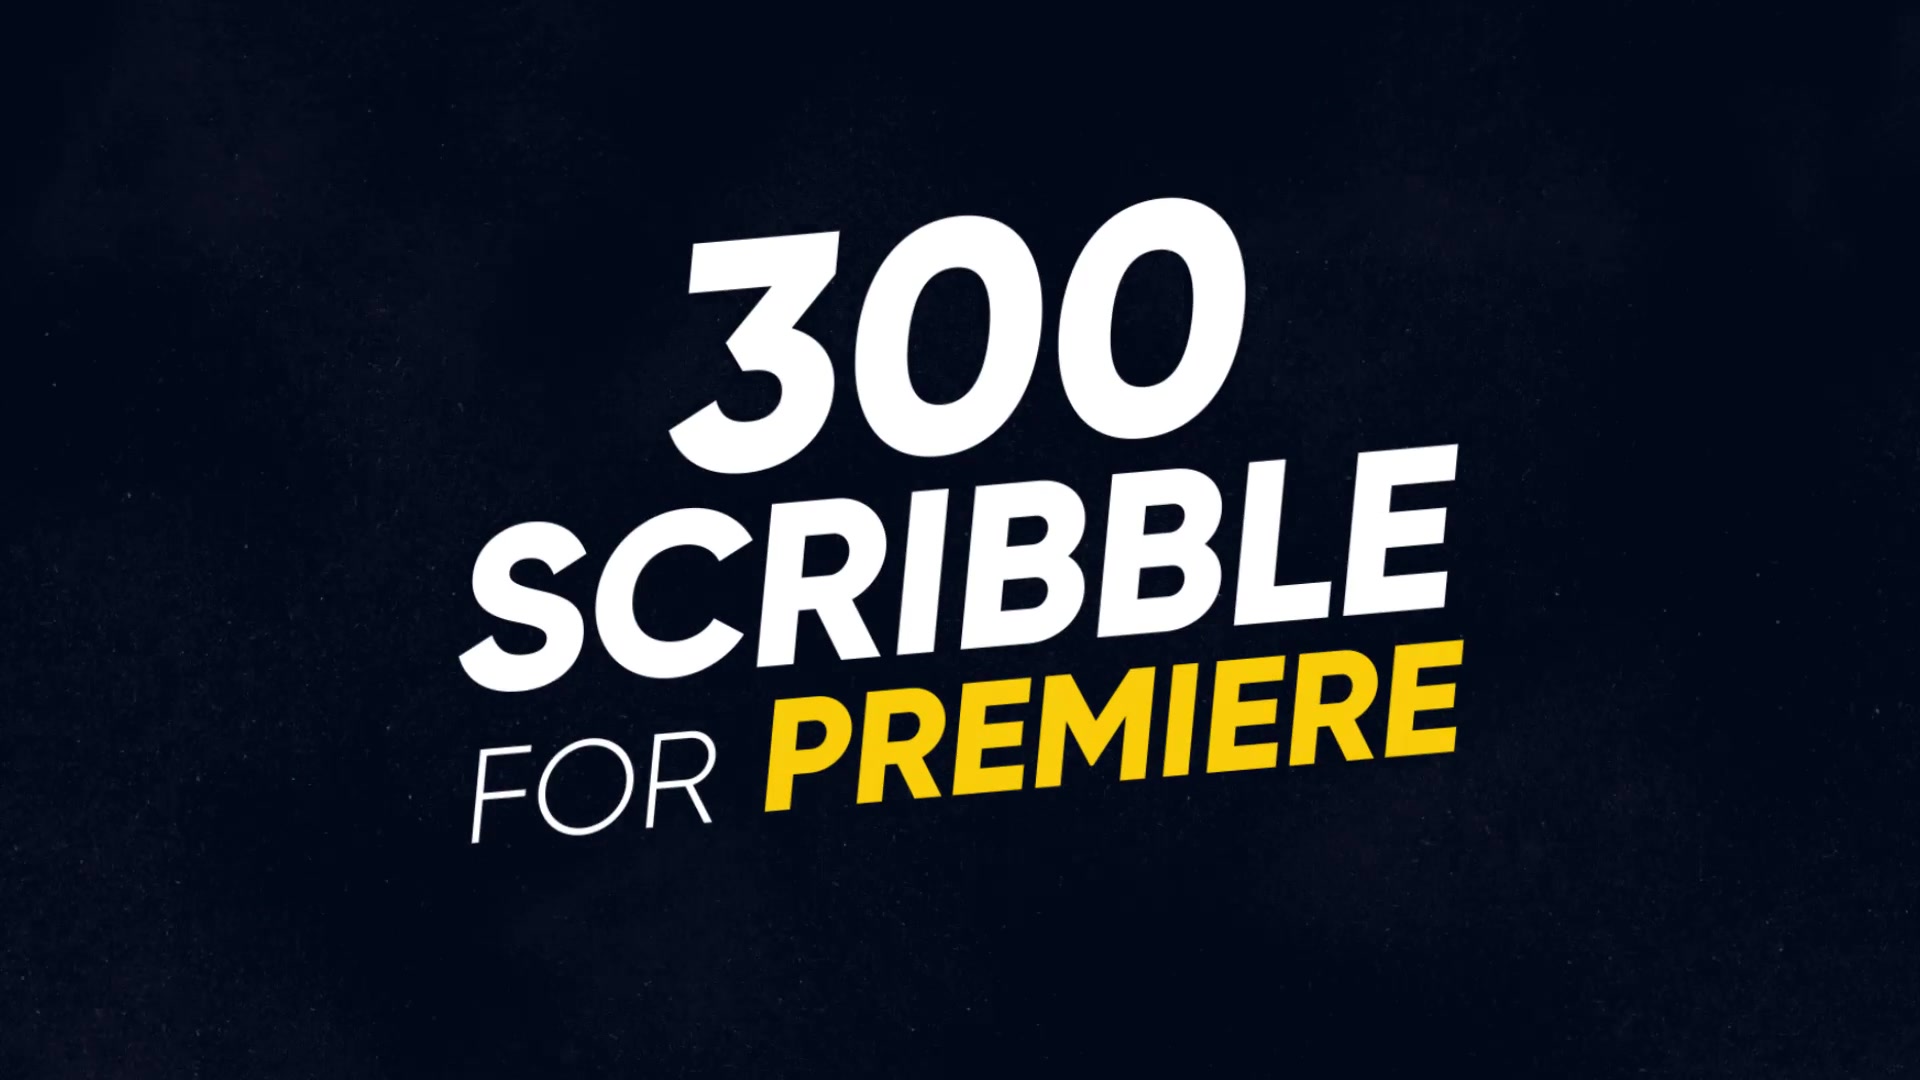 300 Scribble Premiere Videohive 23395283 Premiere Pro Image 5